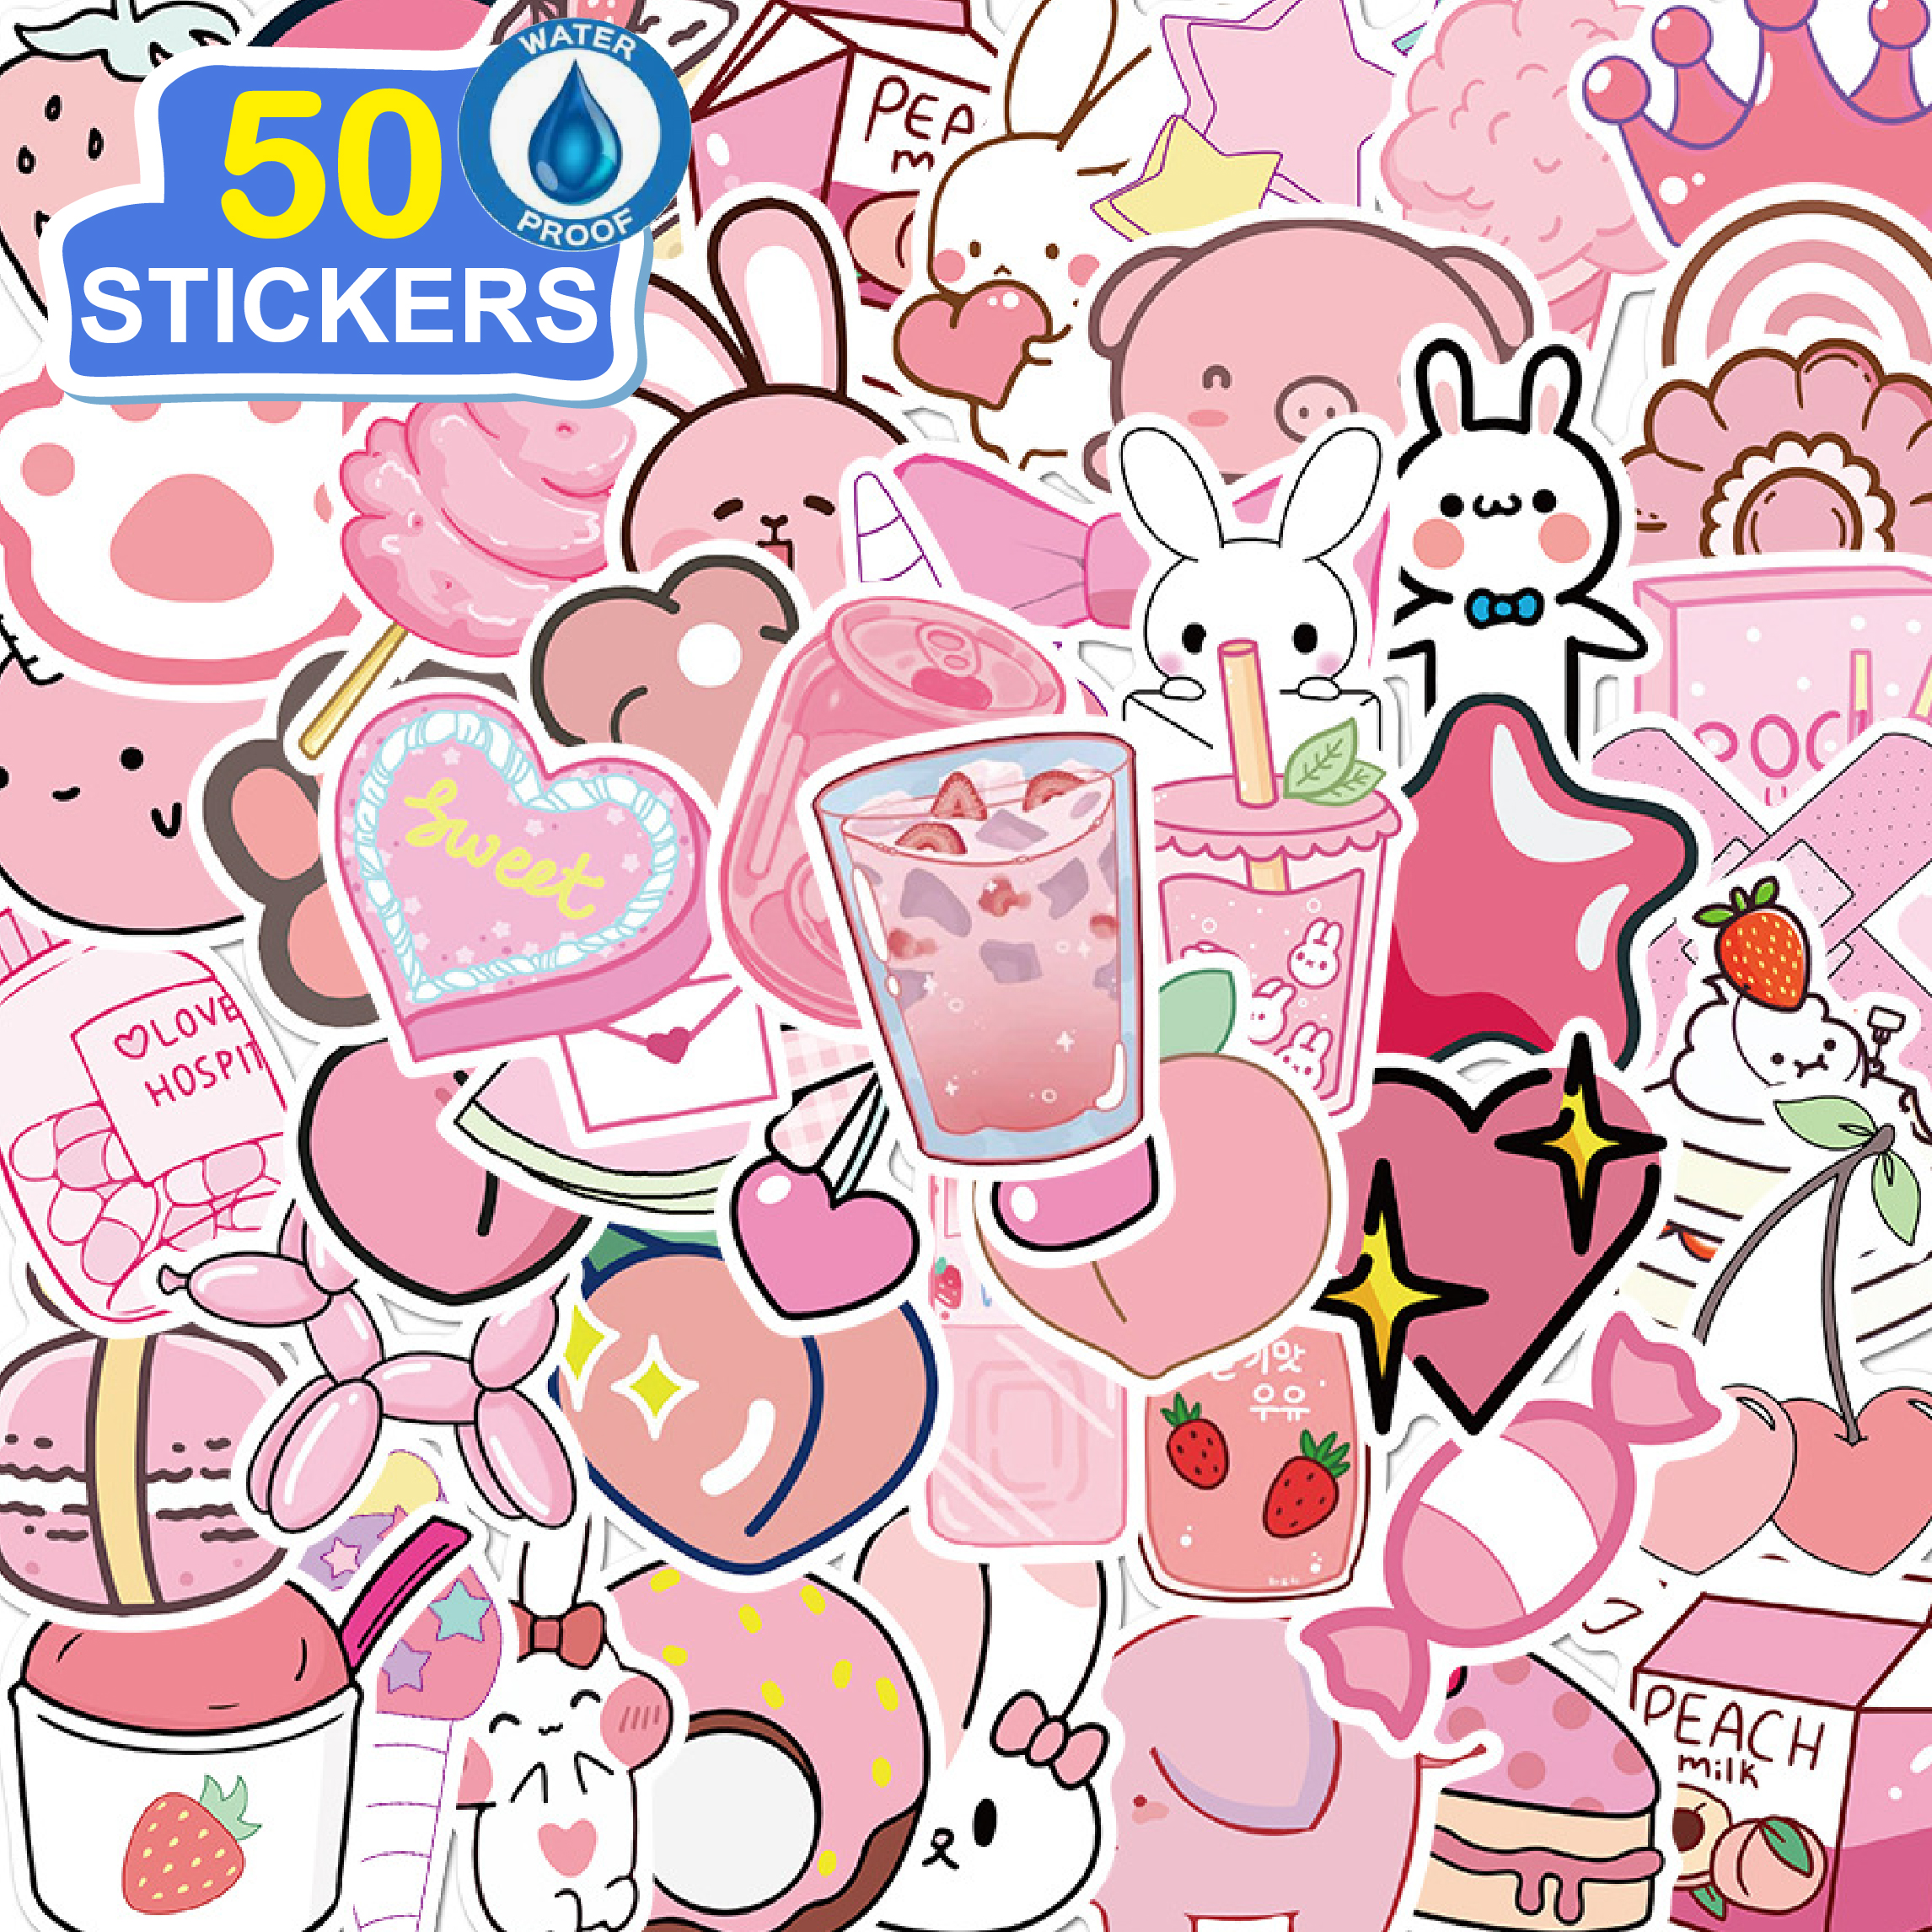 50 Stickers Cô gái màu hồng -Giấy Hình dán dễ thương hoạt hình trang trí laptop, điện thoại, ipad, cốc nước, sổ tay, vali du lịch, scooter, ván trược - Chống thấm nước